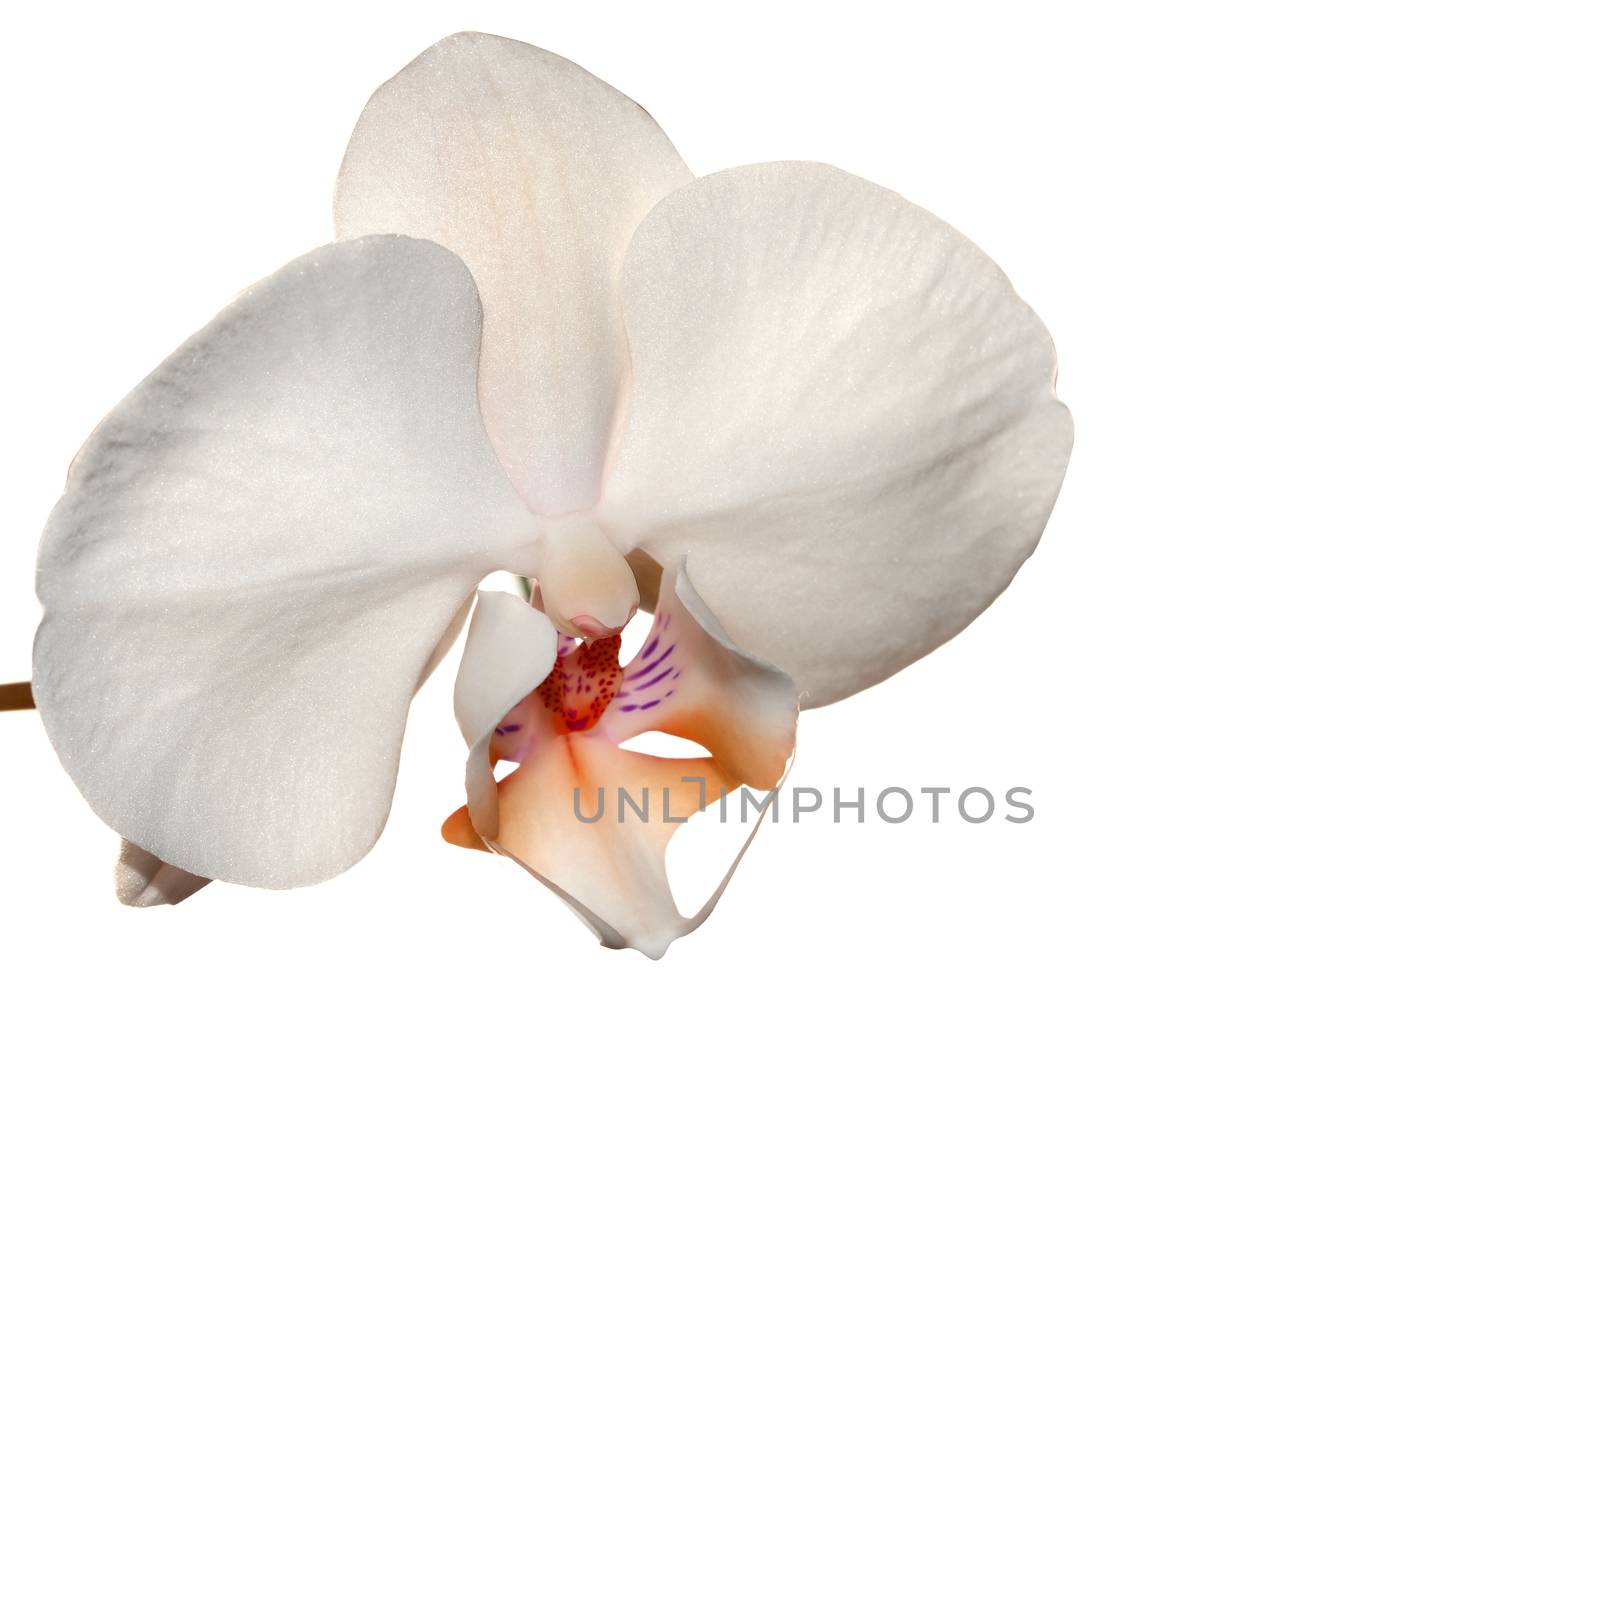 Orange orchid flower by stellar